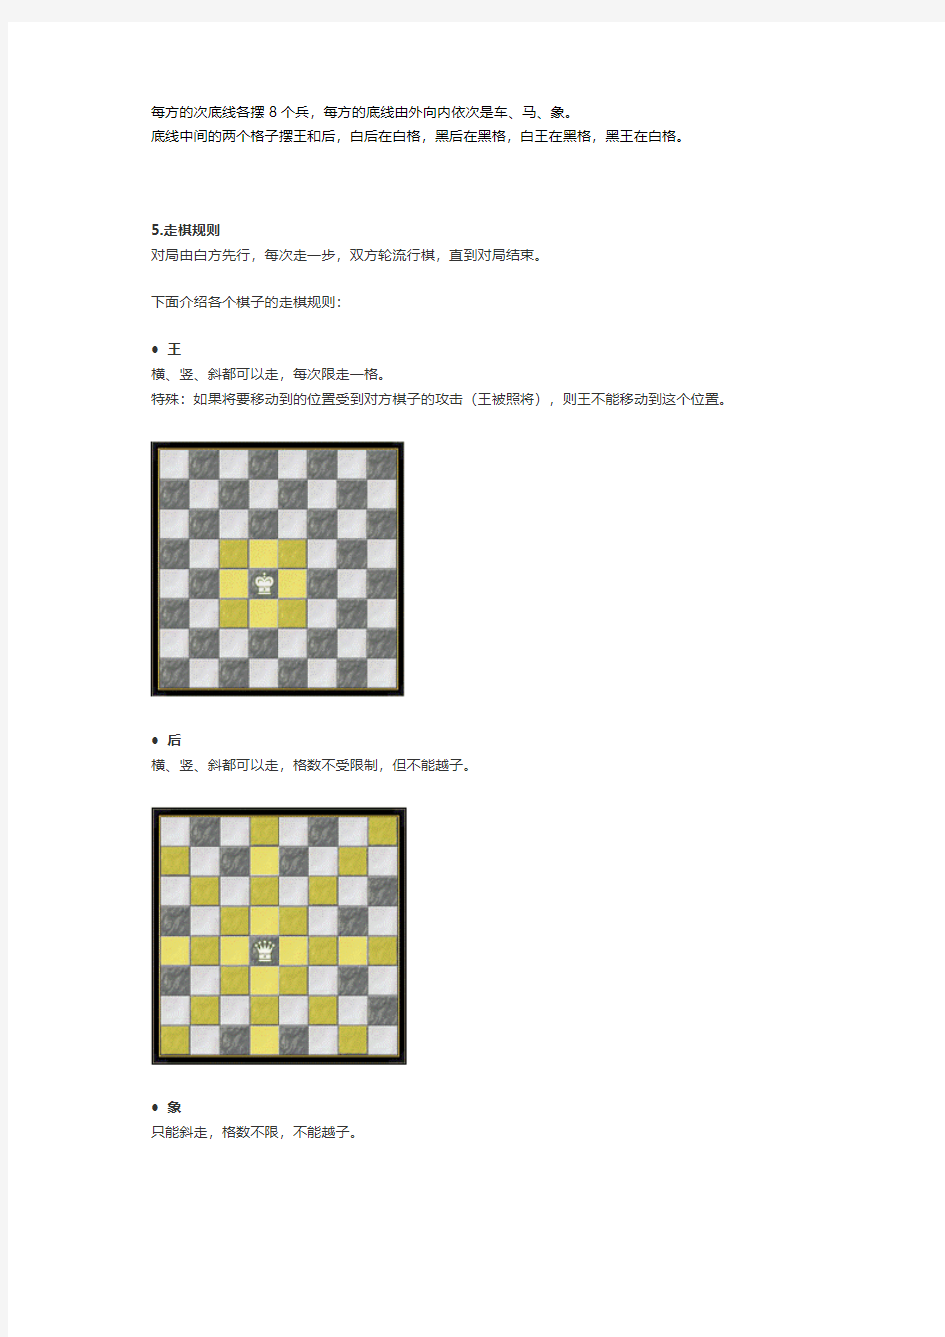 国际象棋规则(图解)